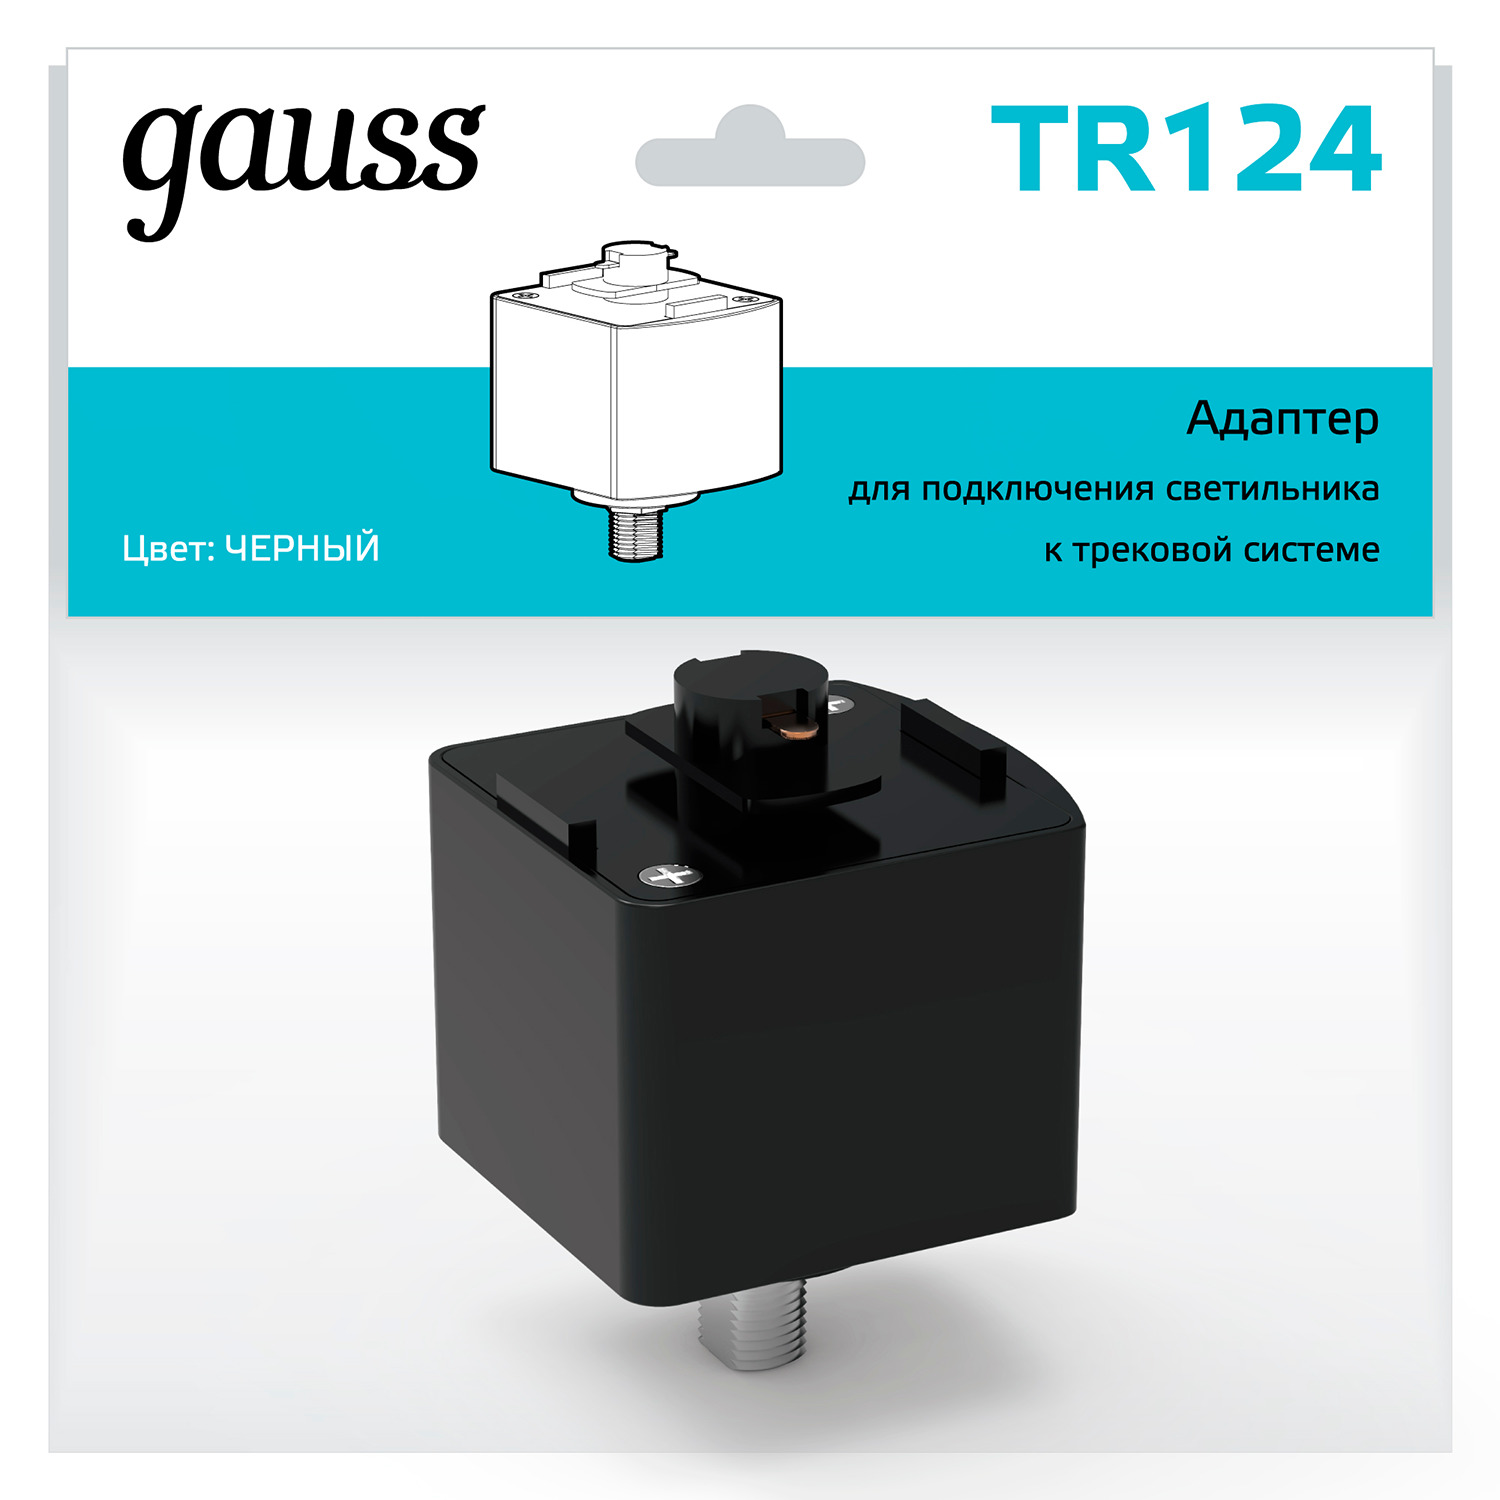 Адаптер Gauss для подключения светильника к трековой системе, цвет черный адаптер для крепления на столб dahua dh pfa152 e нагрузка до 3 кг